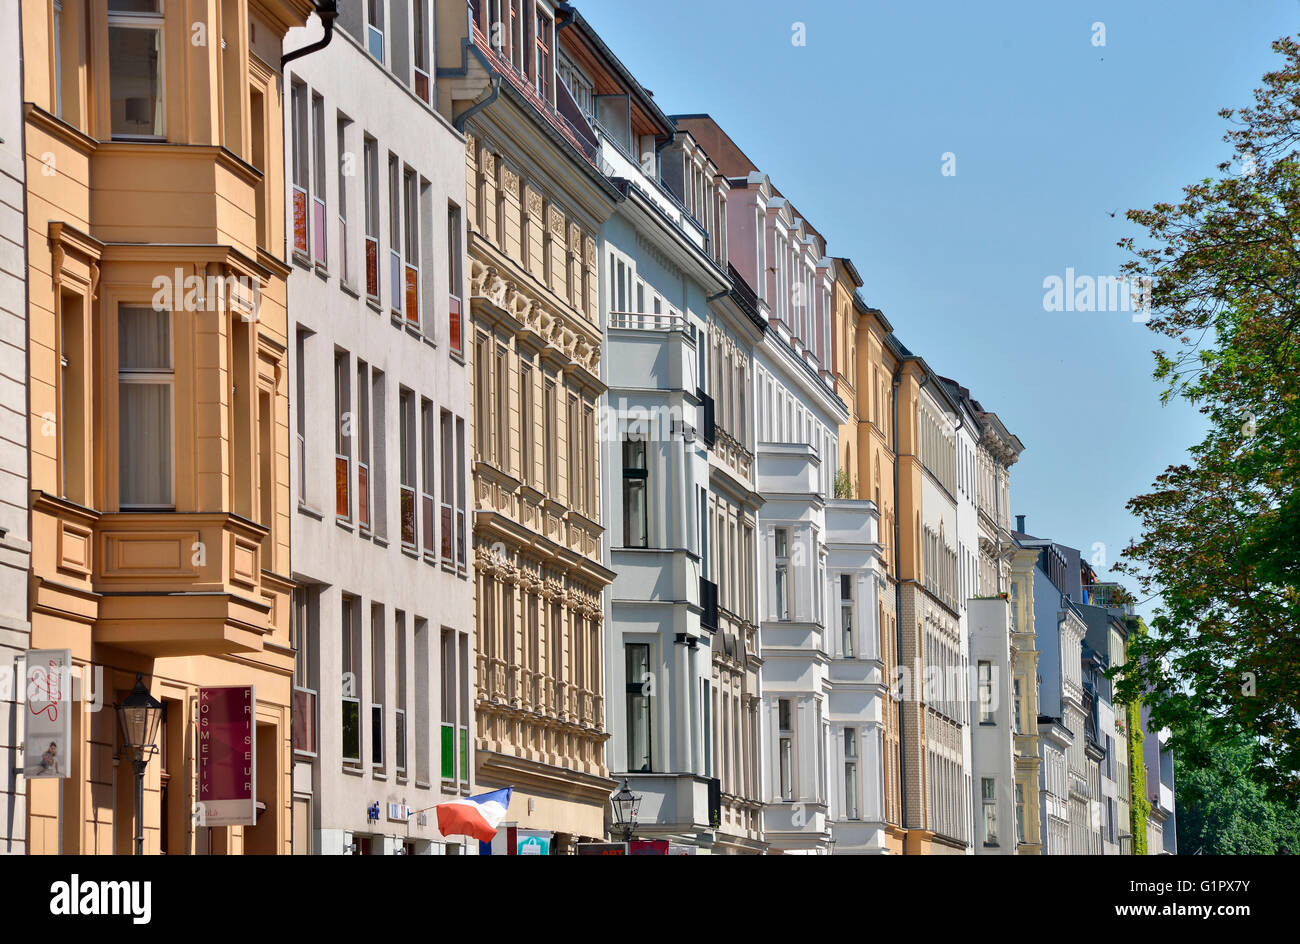 Altbauten, Fassaden, Auguststrasse, Mitte, Berlin, Deutschland Stock Photo